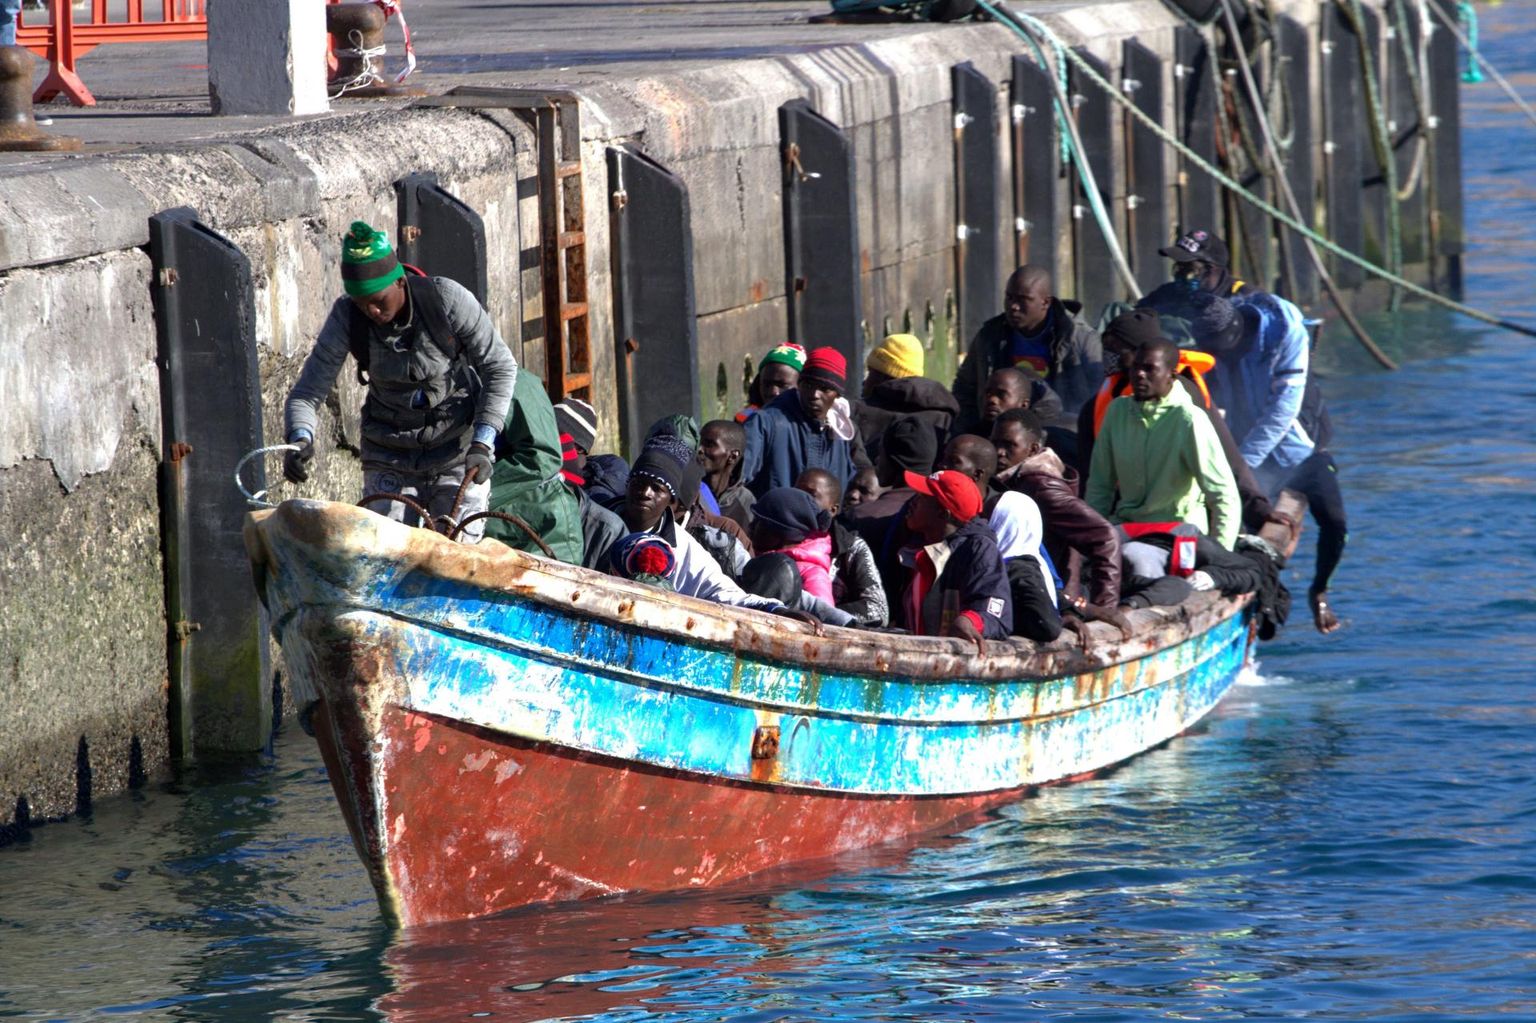 Merelt päästetud 48 migranti Tenerifel.